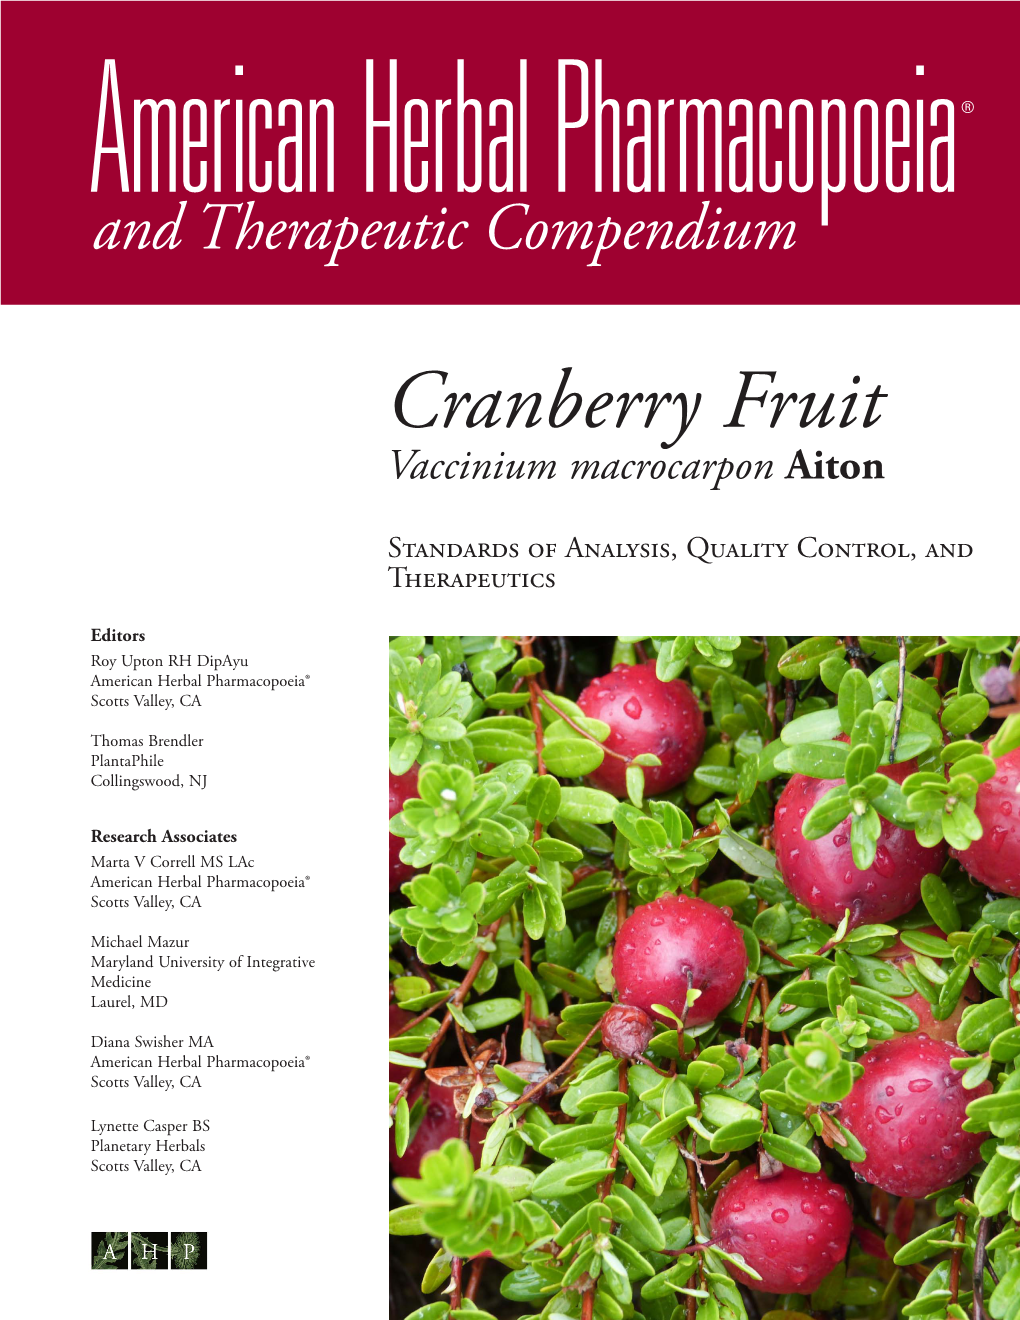 Cranberry Fruit Vaccinium Macrocarpon Aiton